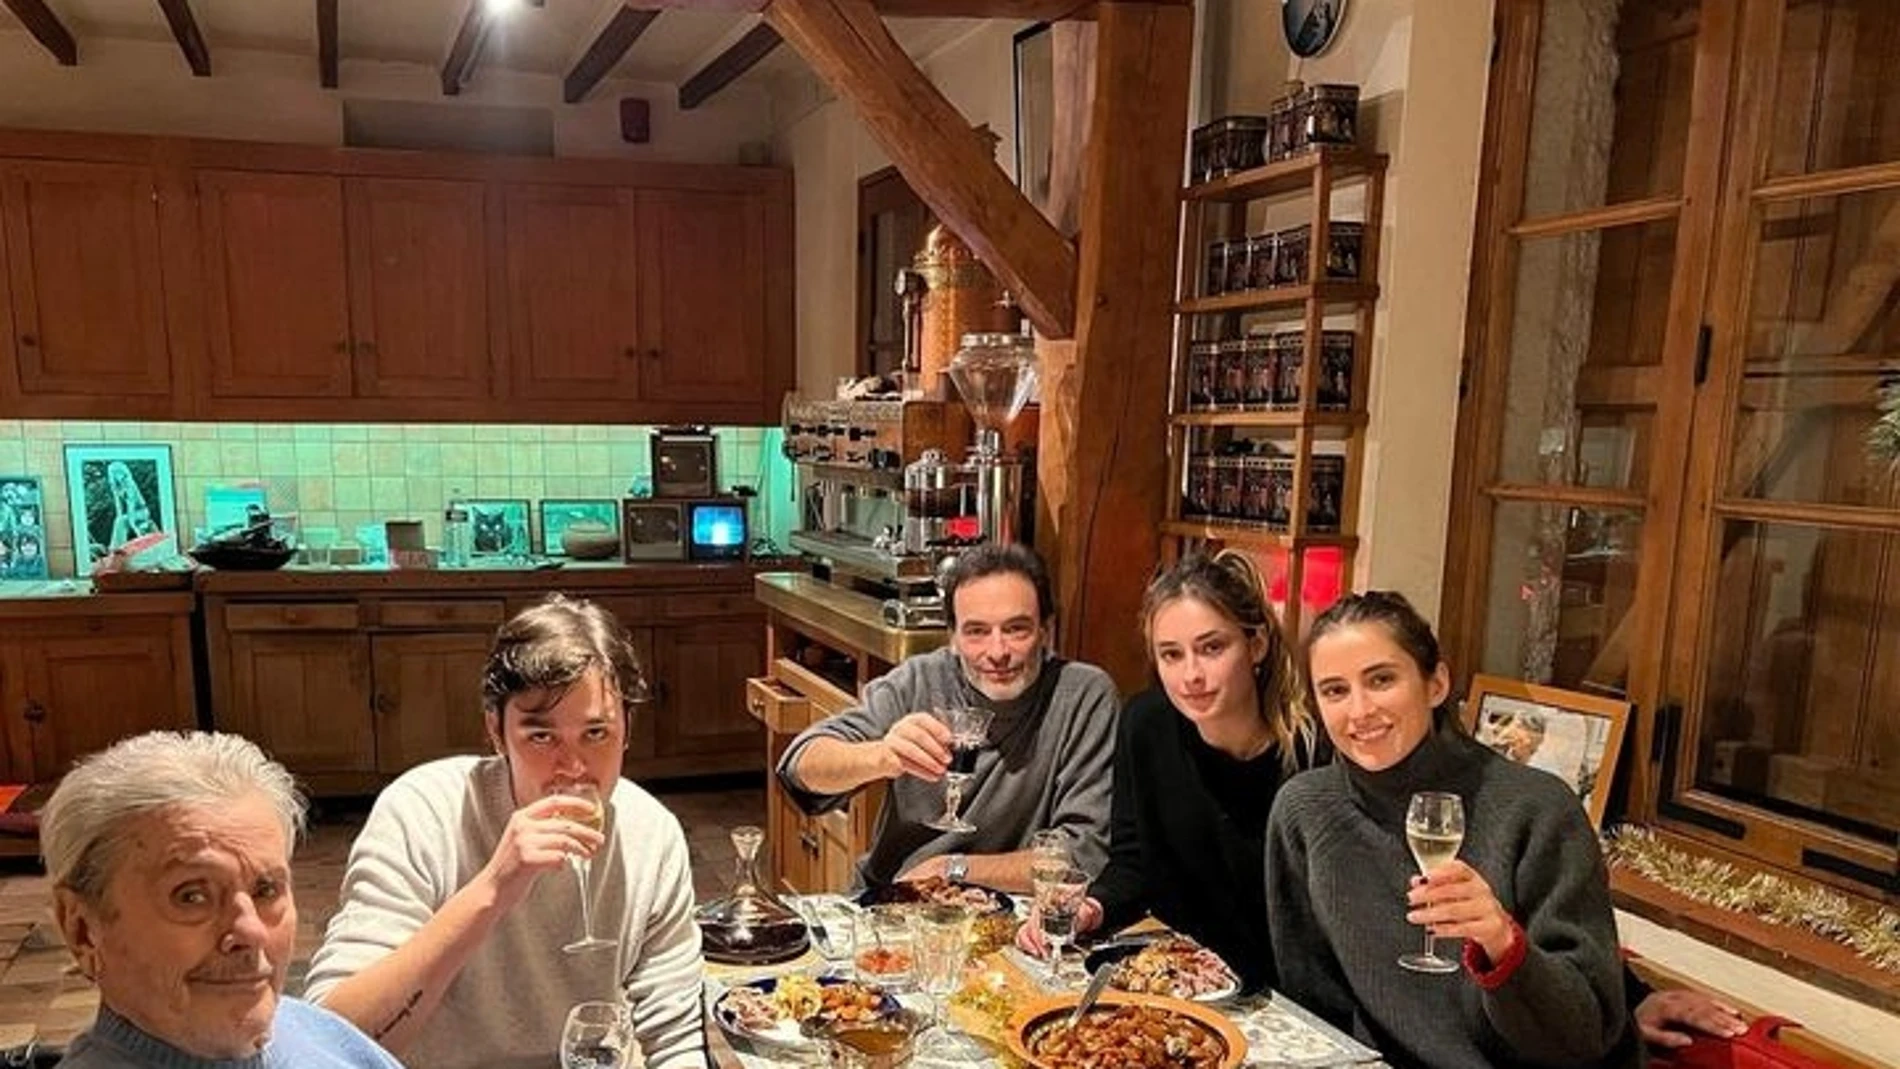 El actor Alain Delon junto a miembros de su familia, en una foto publicada en Nochebuena en Instagram su hijo Alain-Fabien.